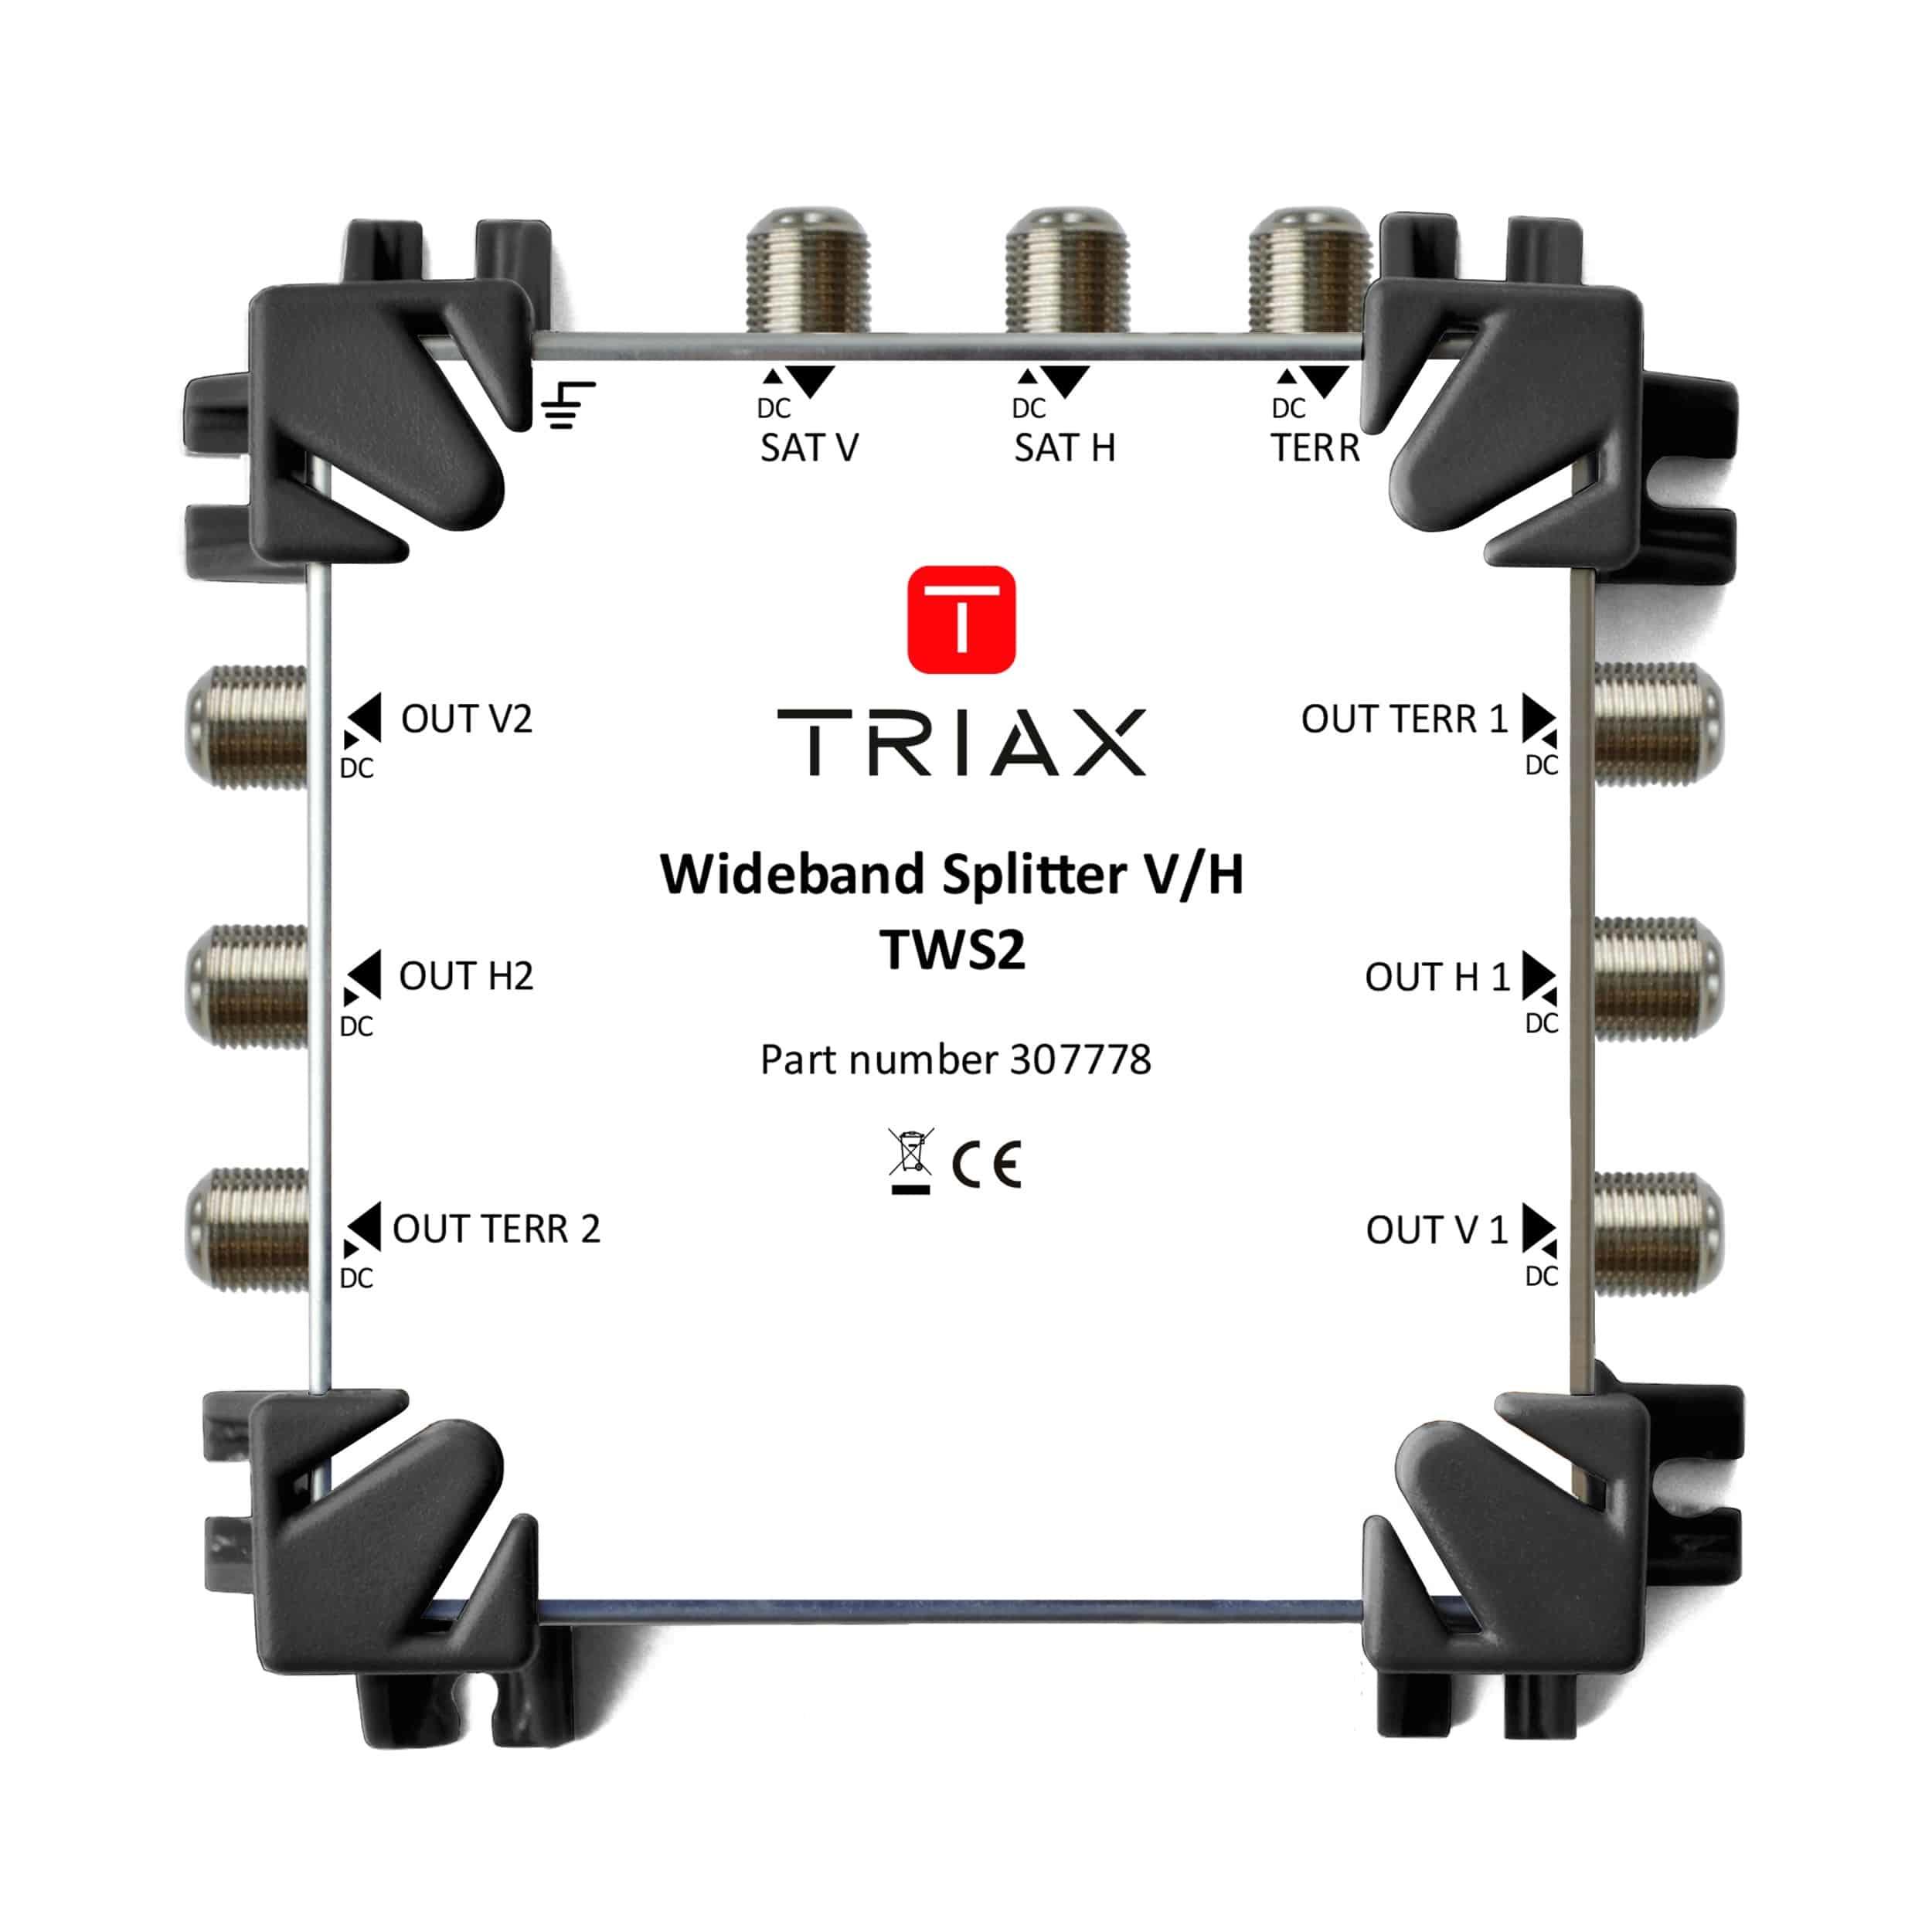 TWS2 Wideband Splitter H/V